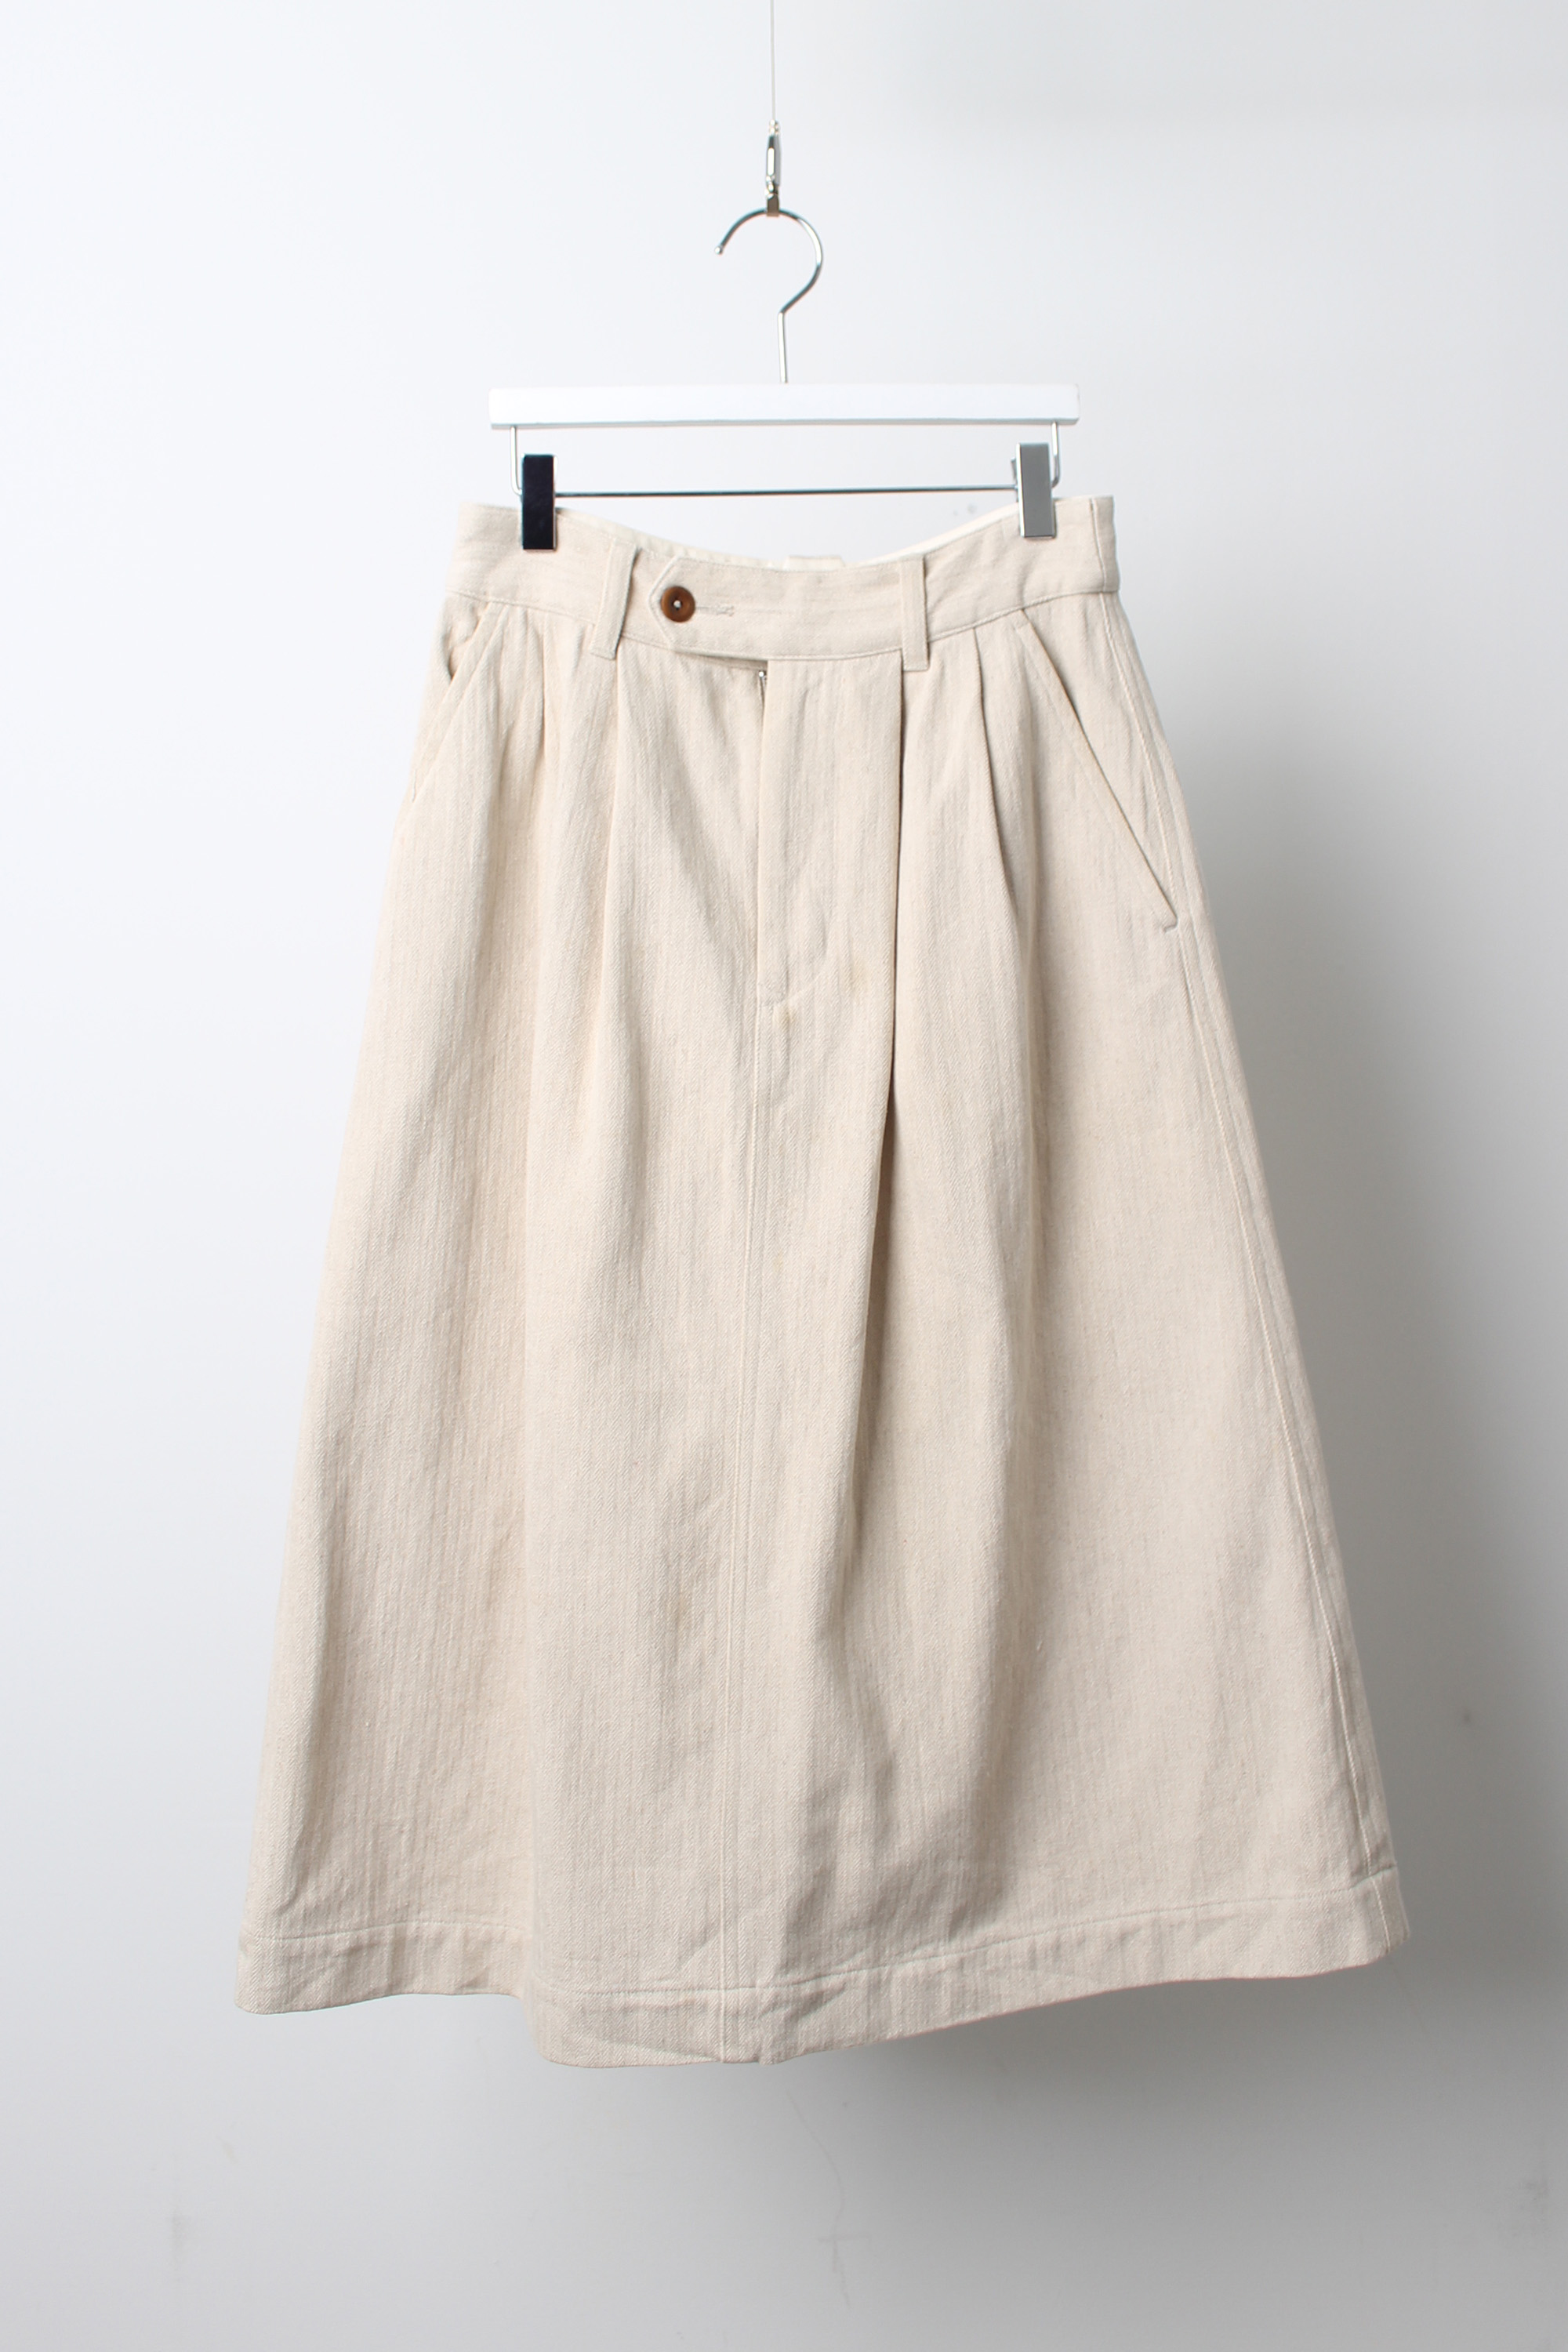 MHL skirt